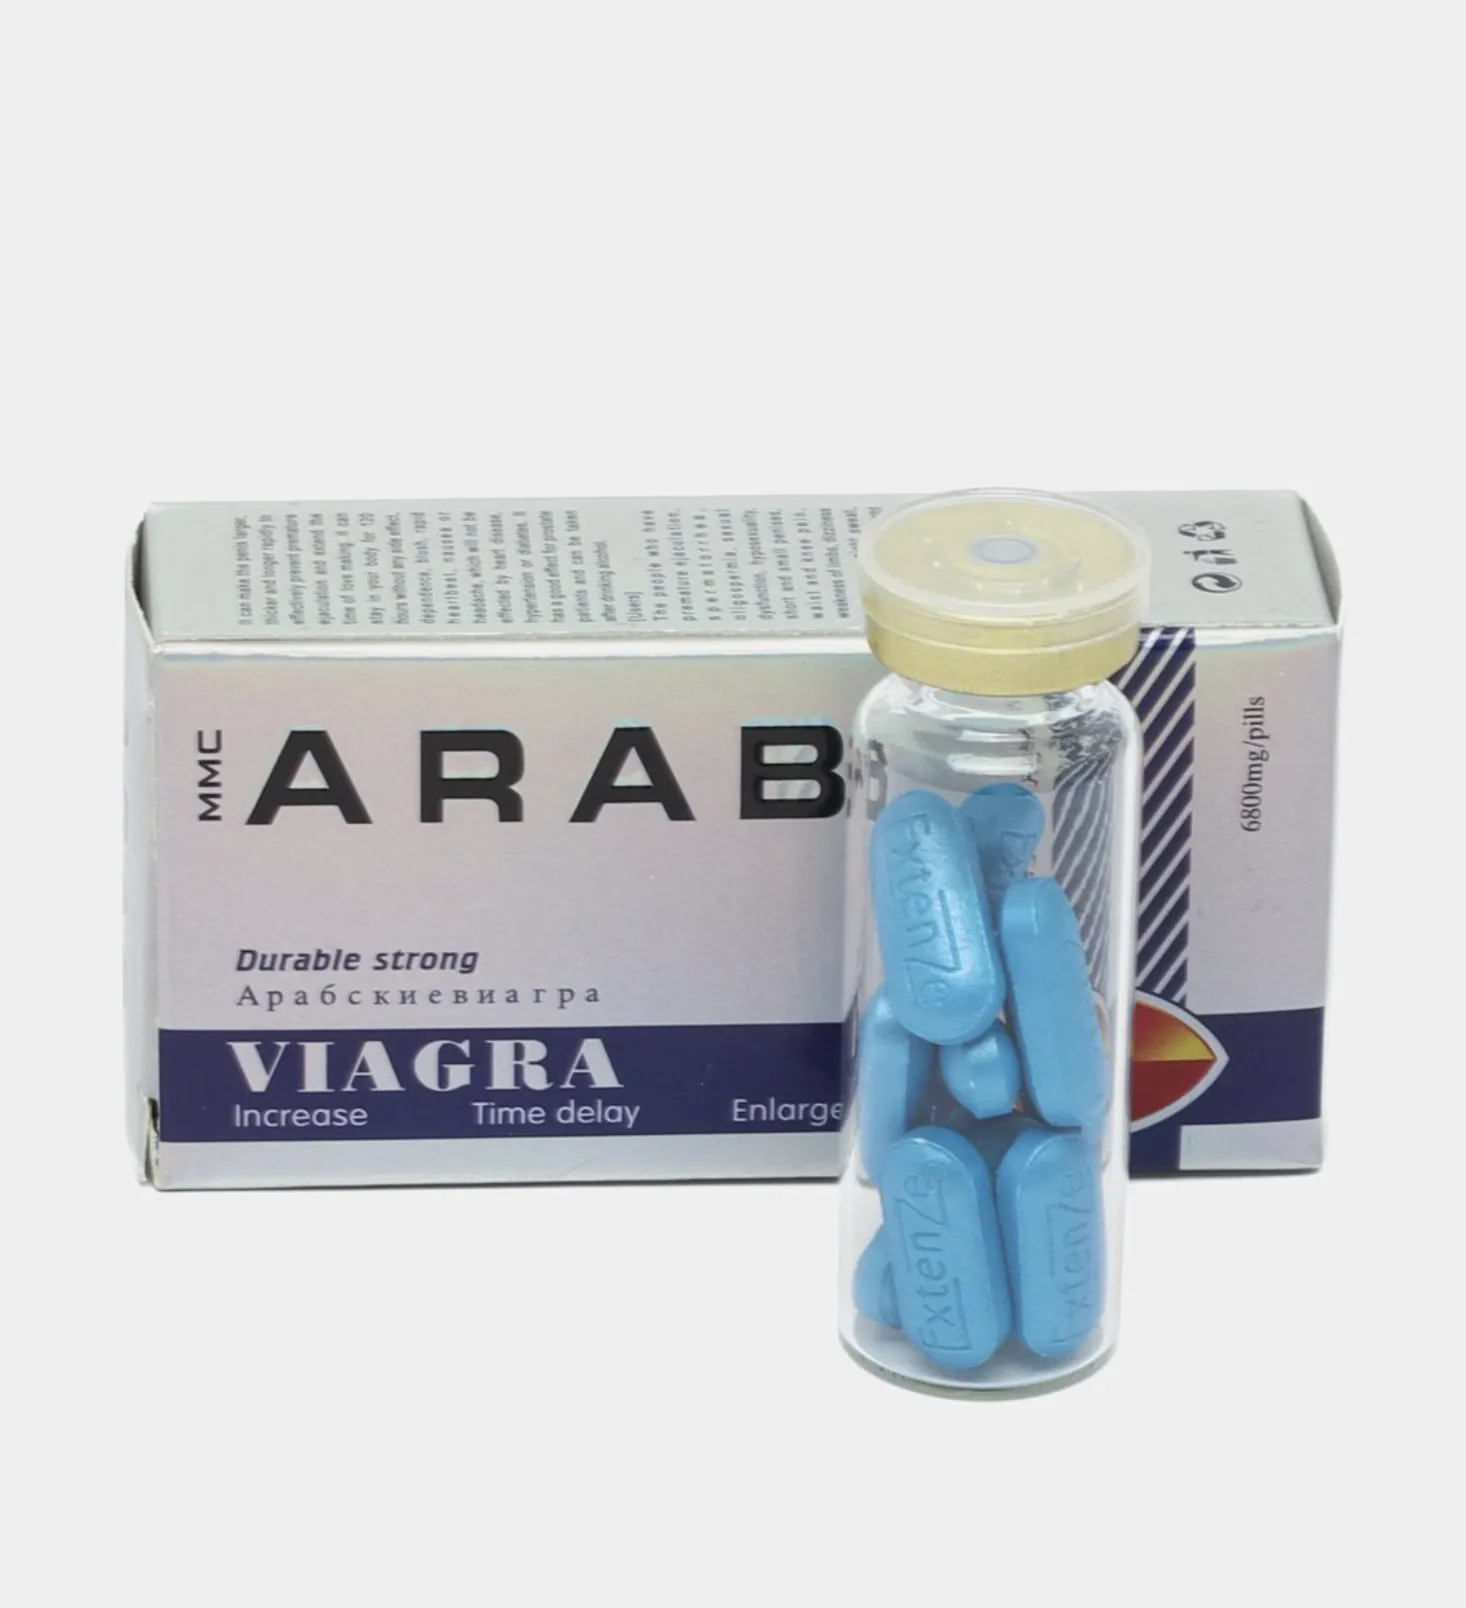 Мужской возбудитель Arab Viagra, 10 таблеток#1